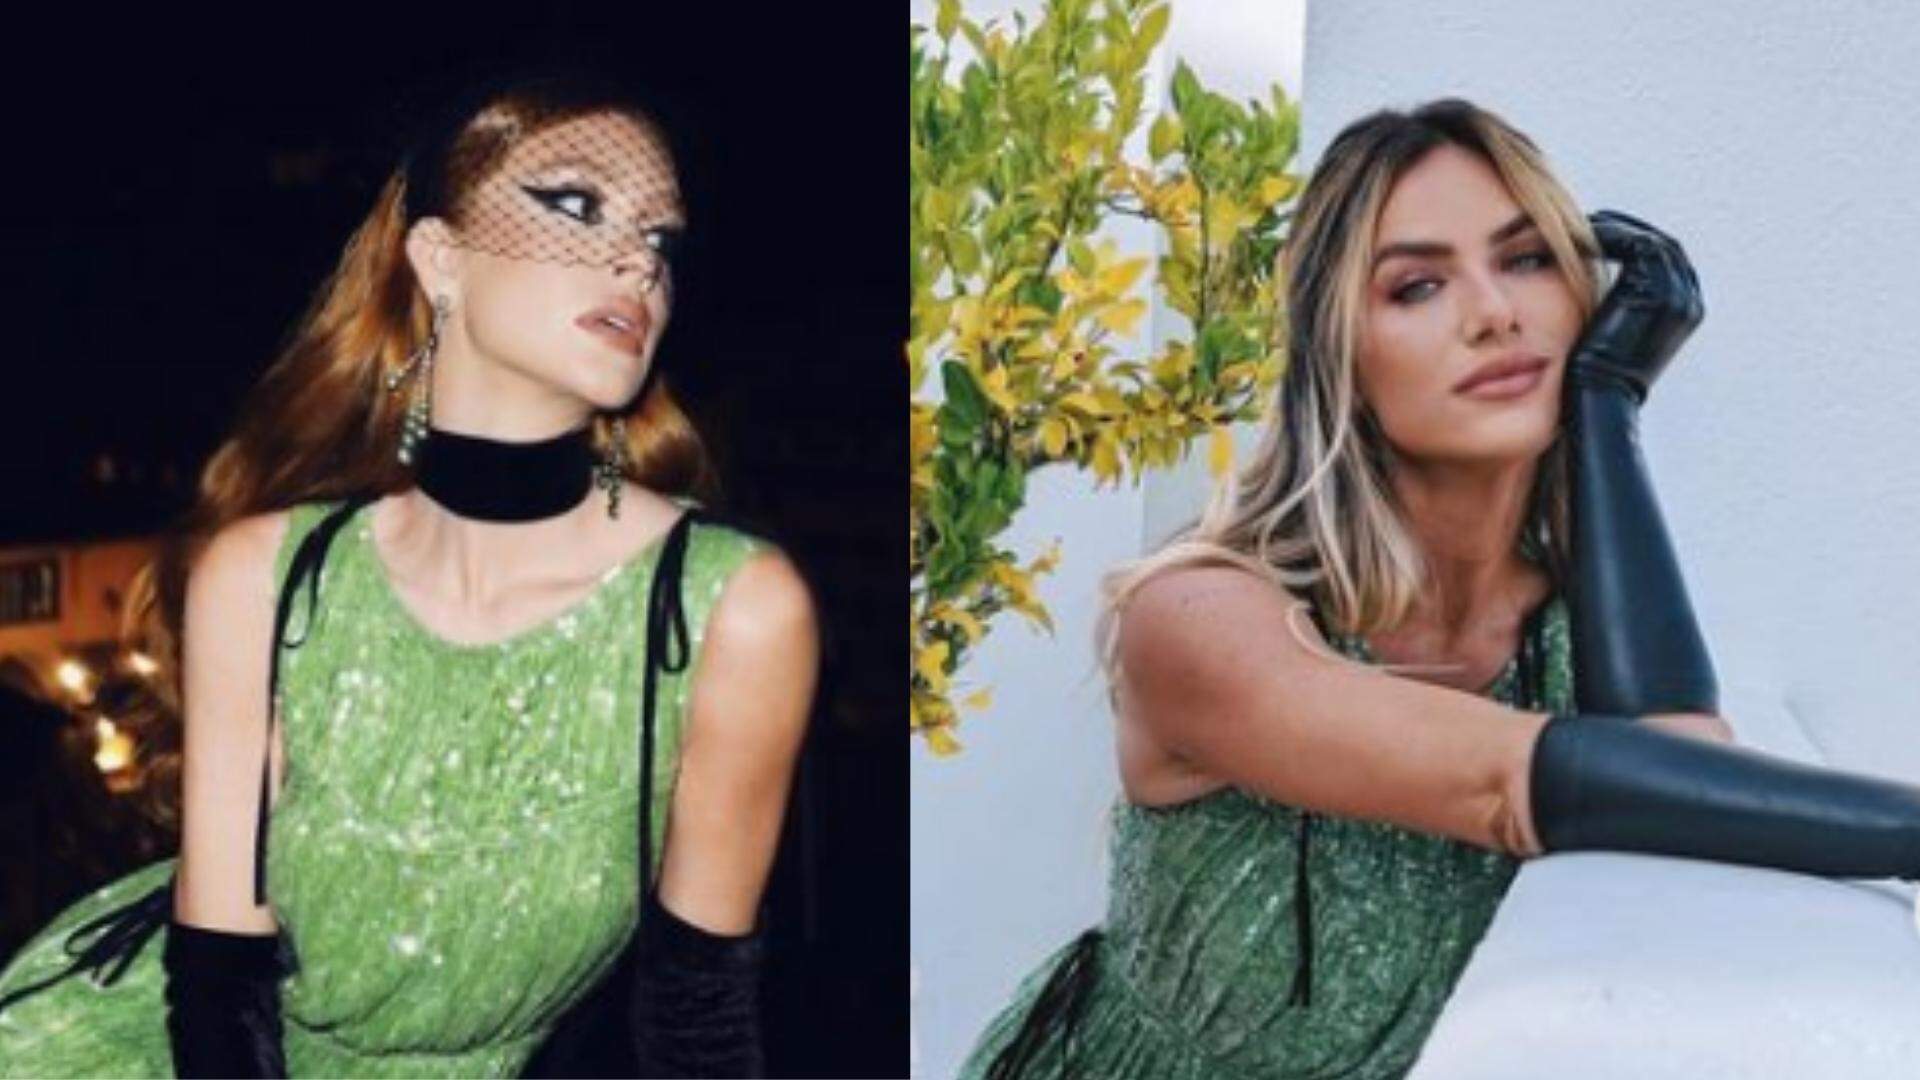 Tá na Moda: Giovanna Ewbank aposta em look já usado por Marina Ruy Barbosa - Metropolitana FM